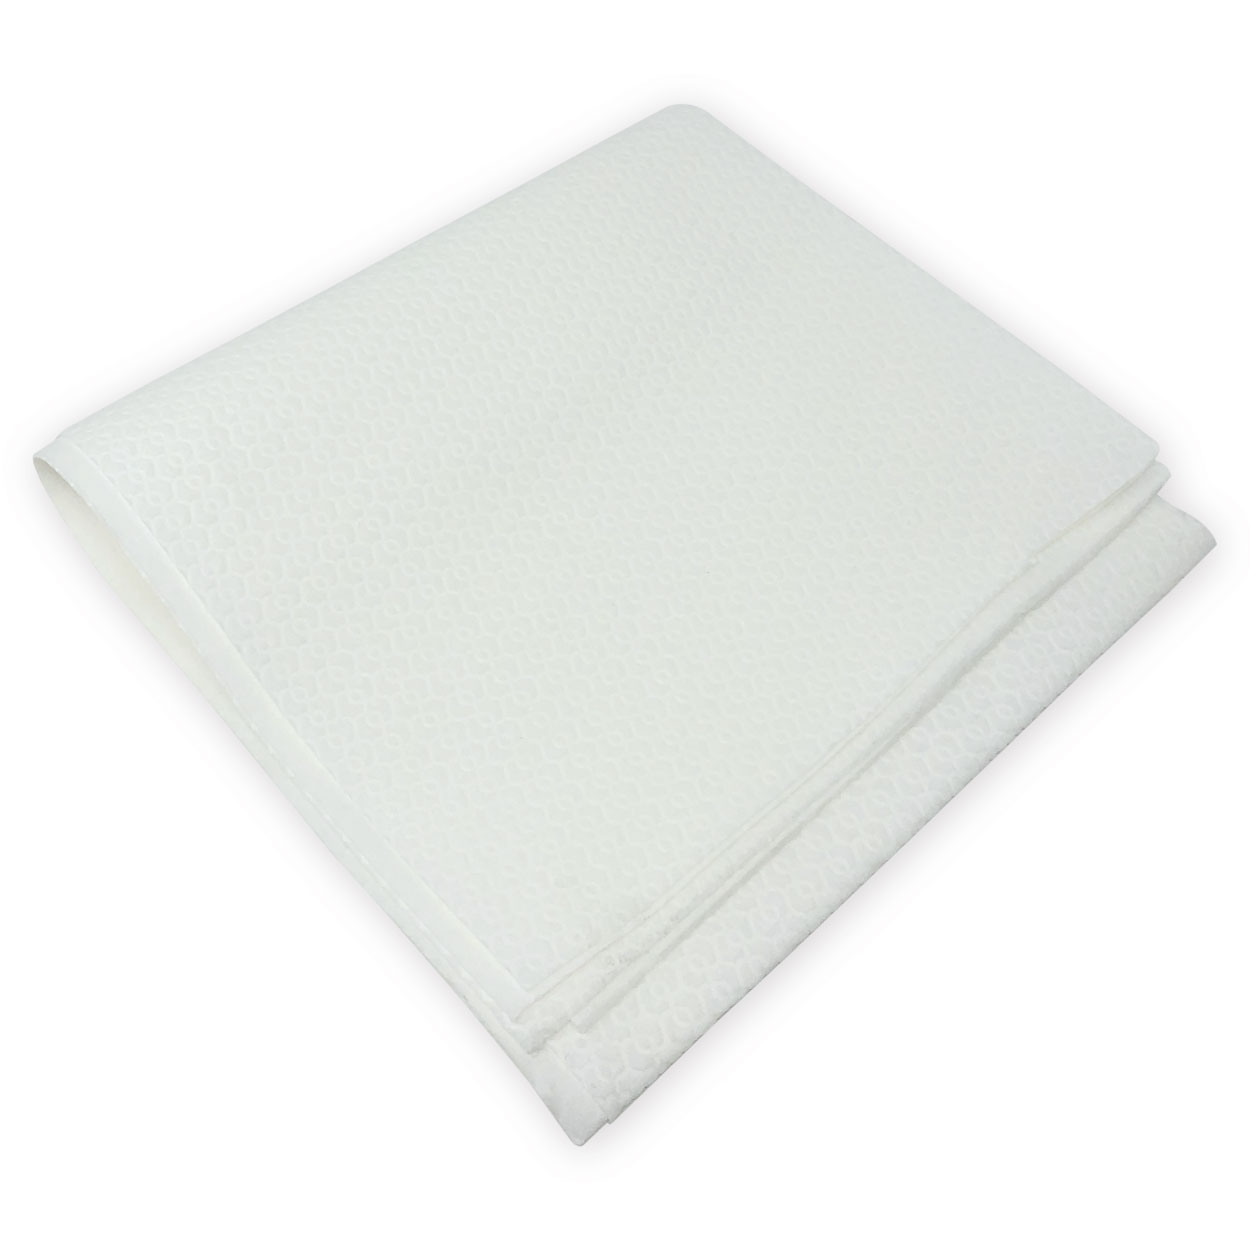 Einmal-Handtuch in weiß, 40 x 80 cm 